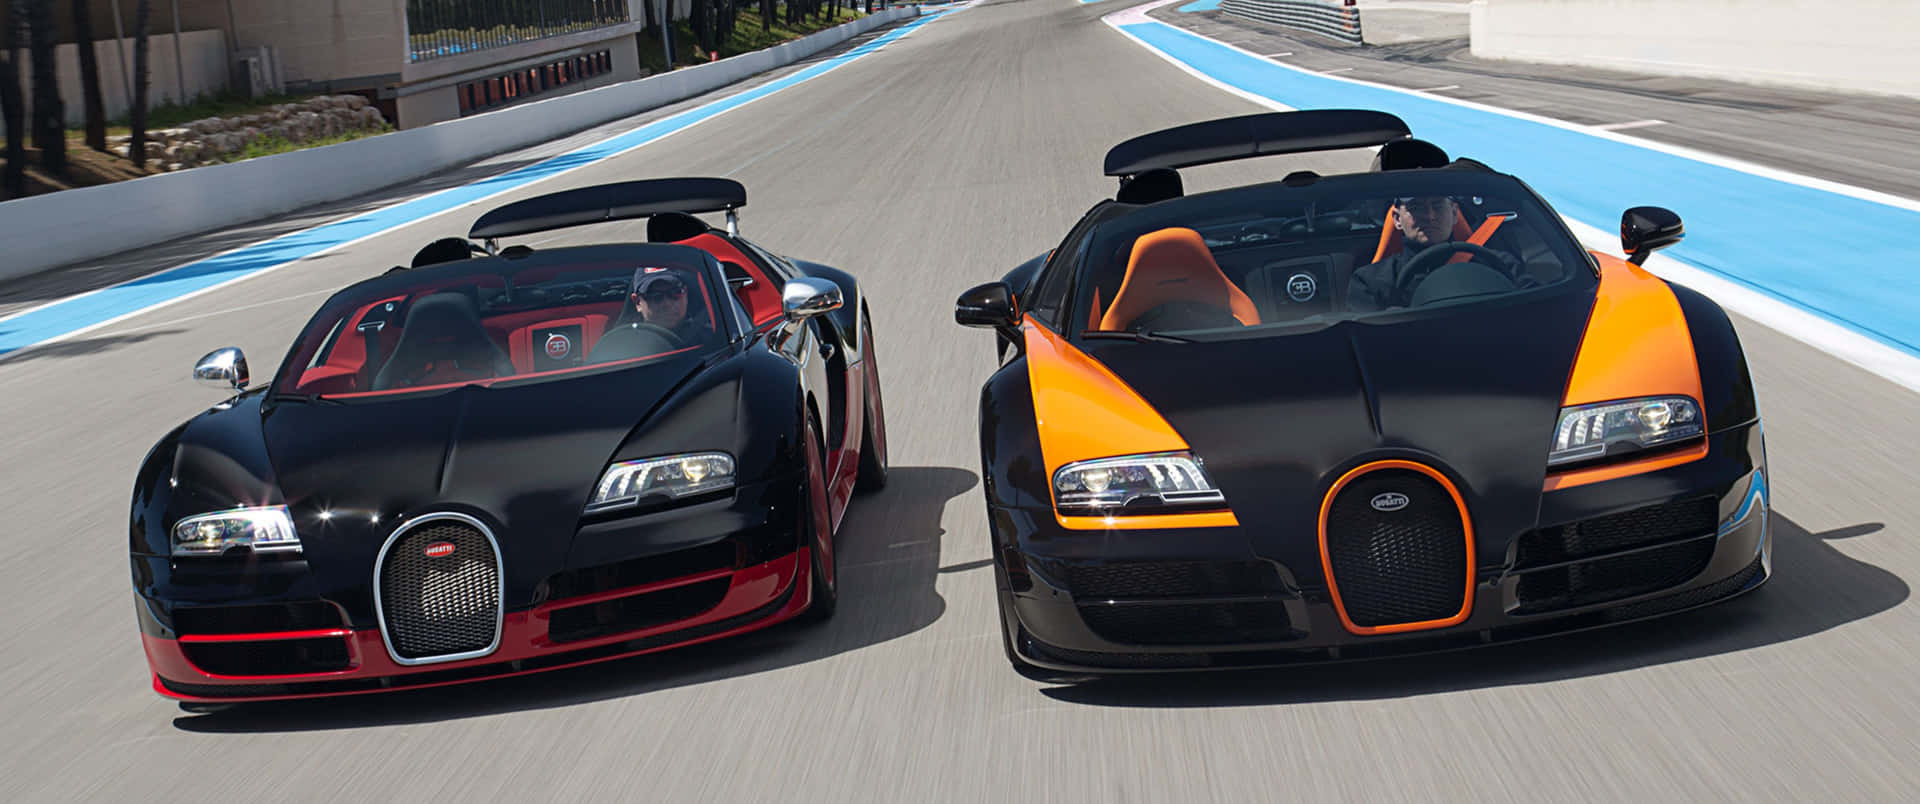 Dueauto Bugatti Stanno Percorrendo Una Pista